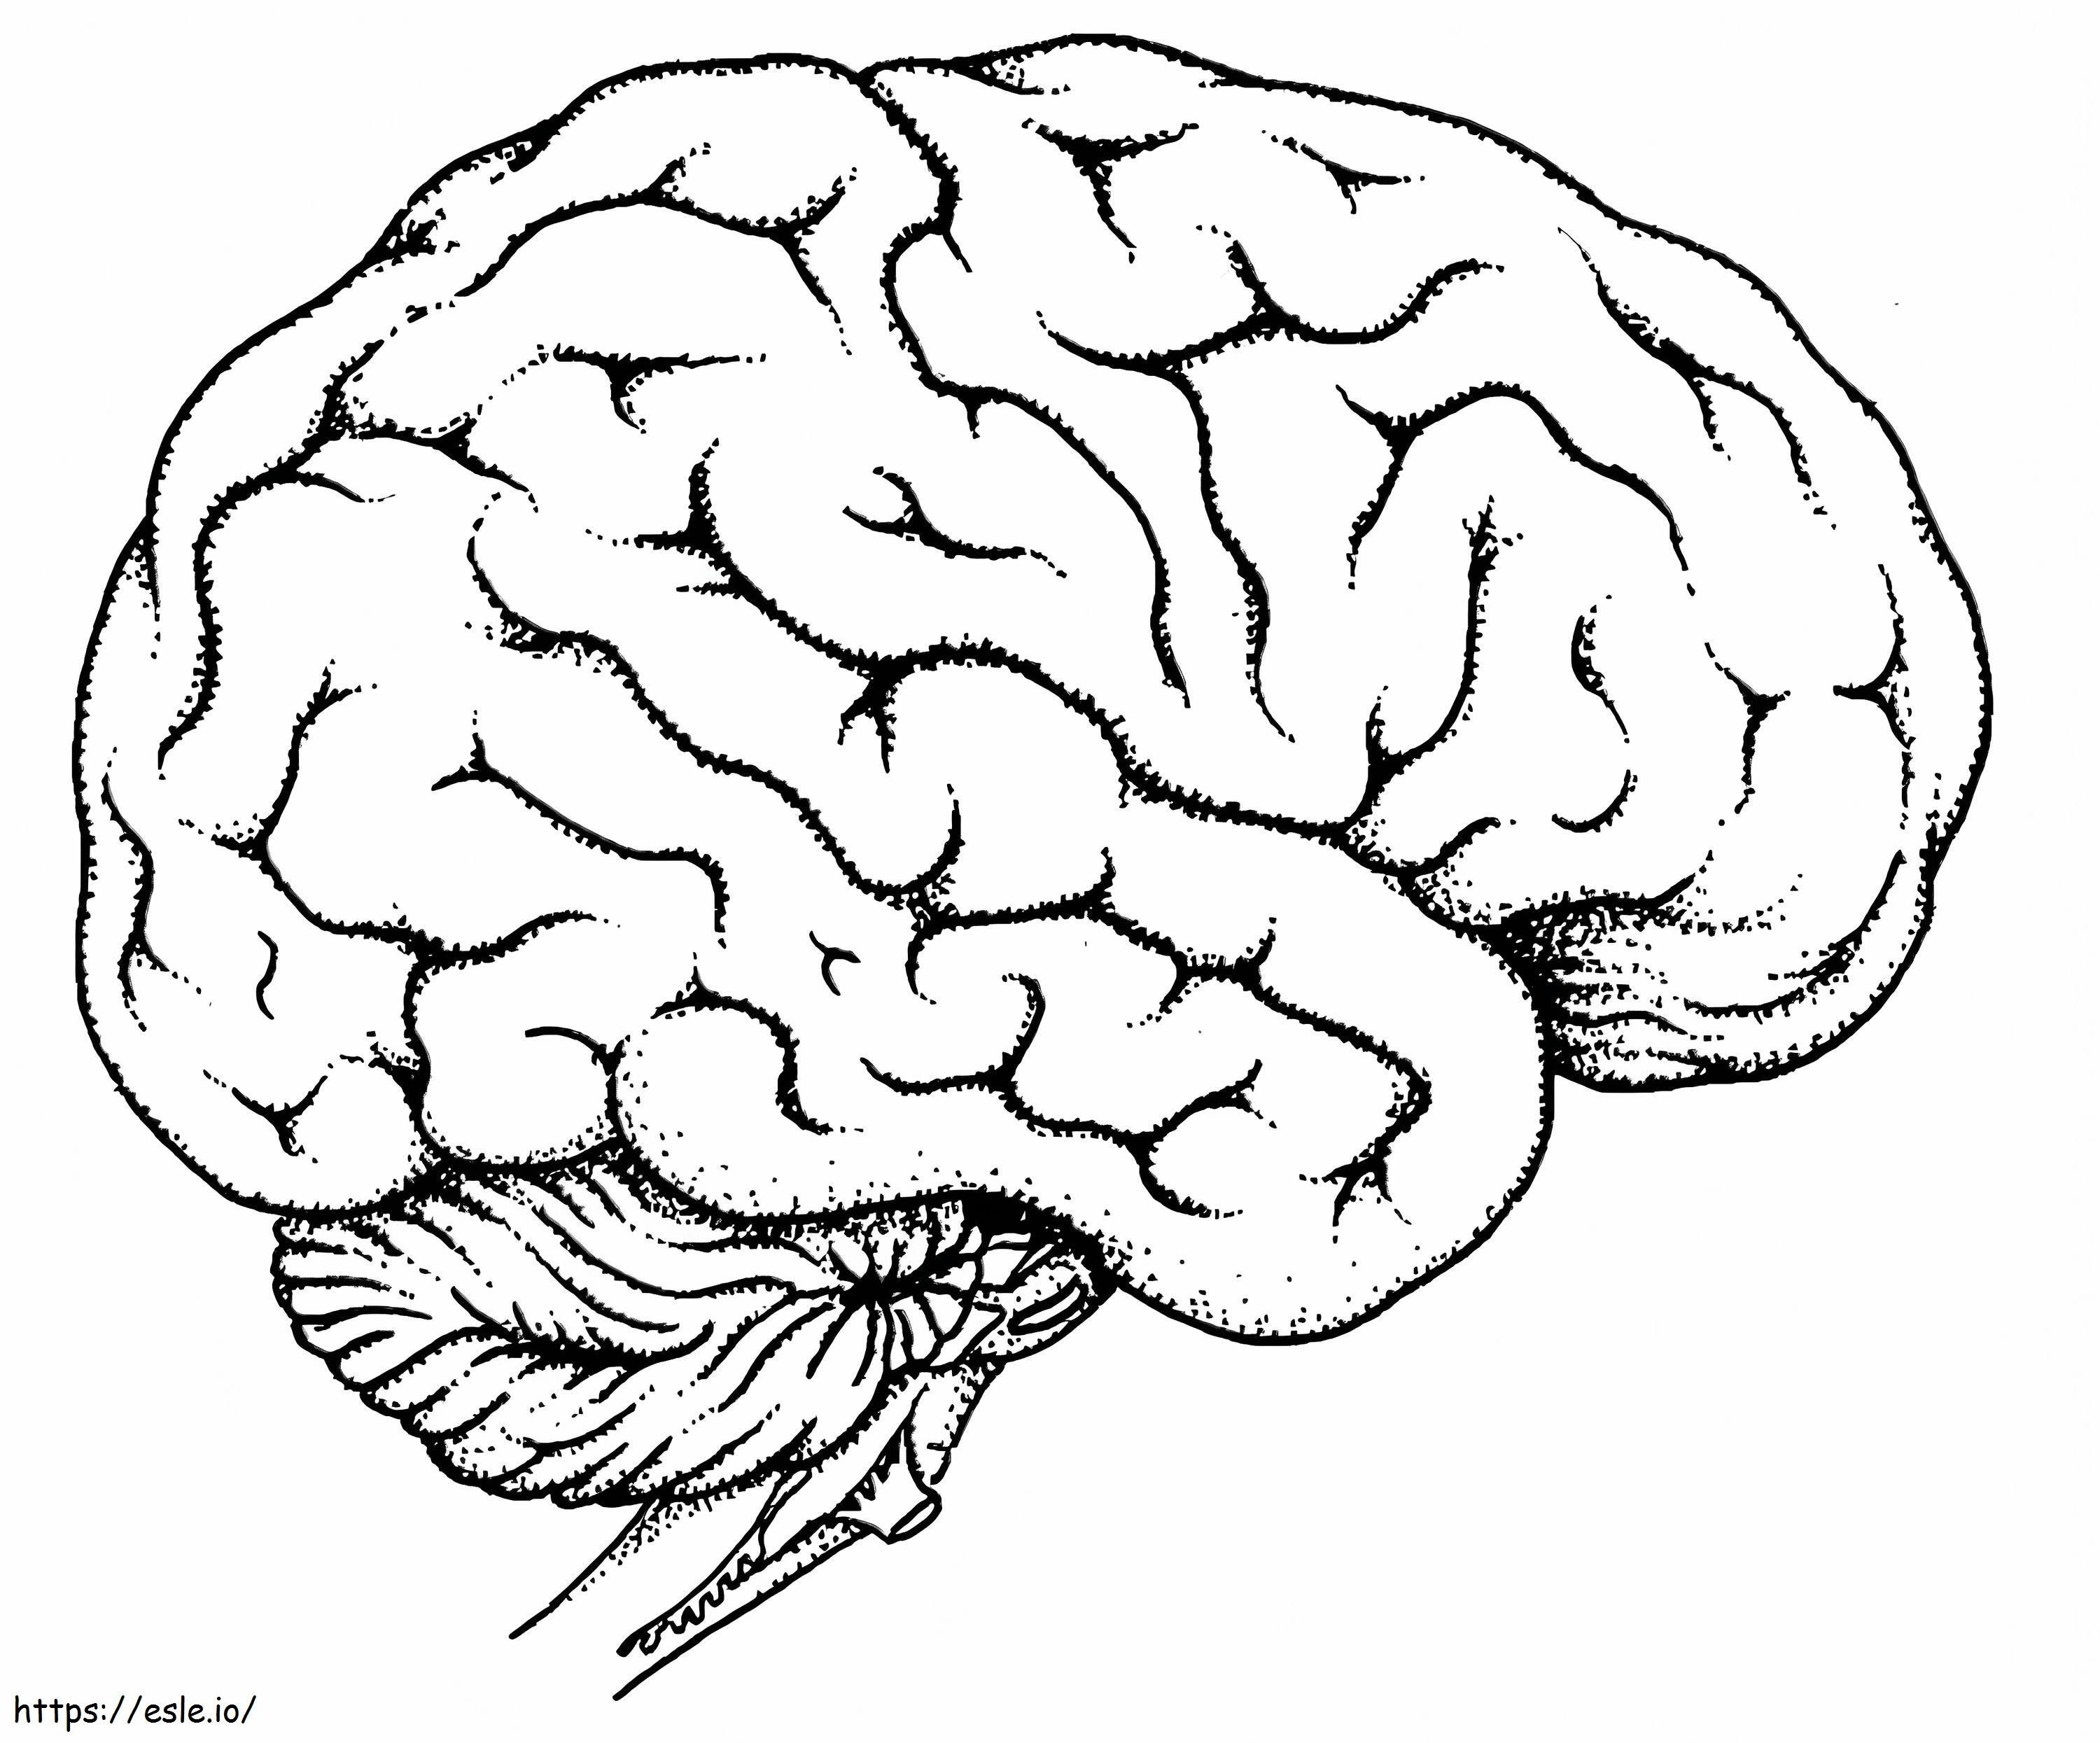 Das menschliche Gehirn ausmalbilder